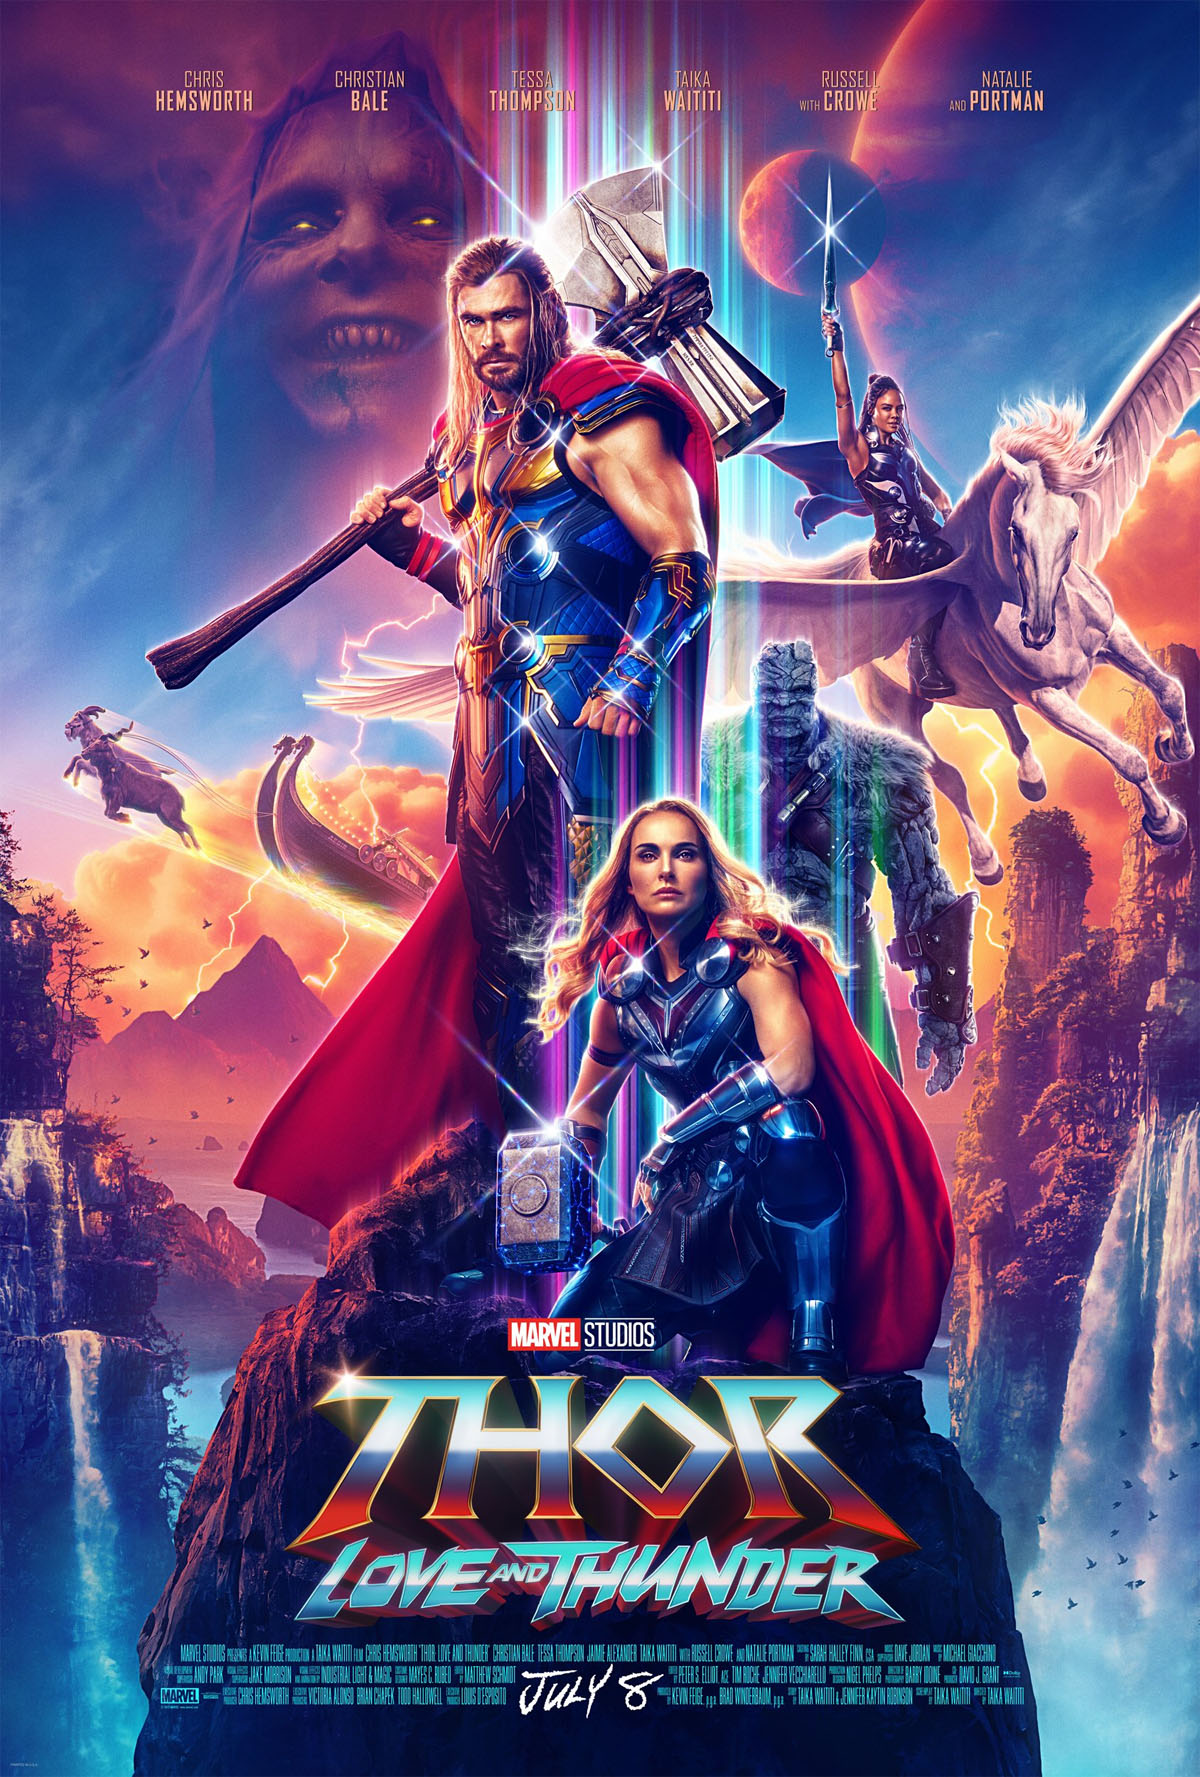 Um pôster de estilo retrô para Thor: Amor e Trovão.